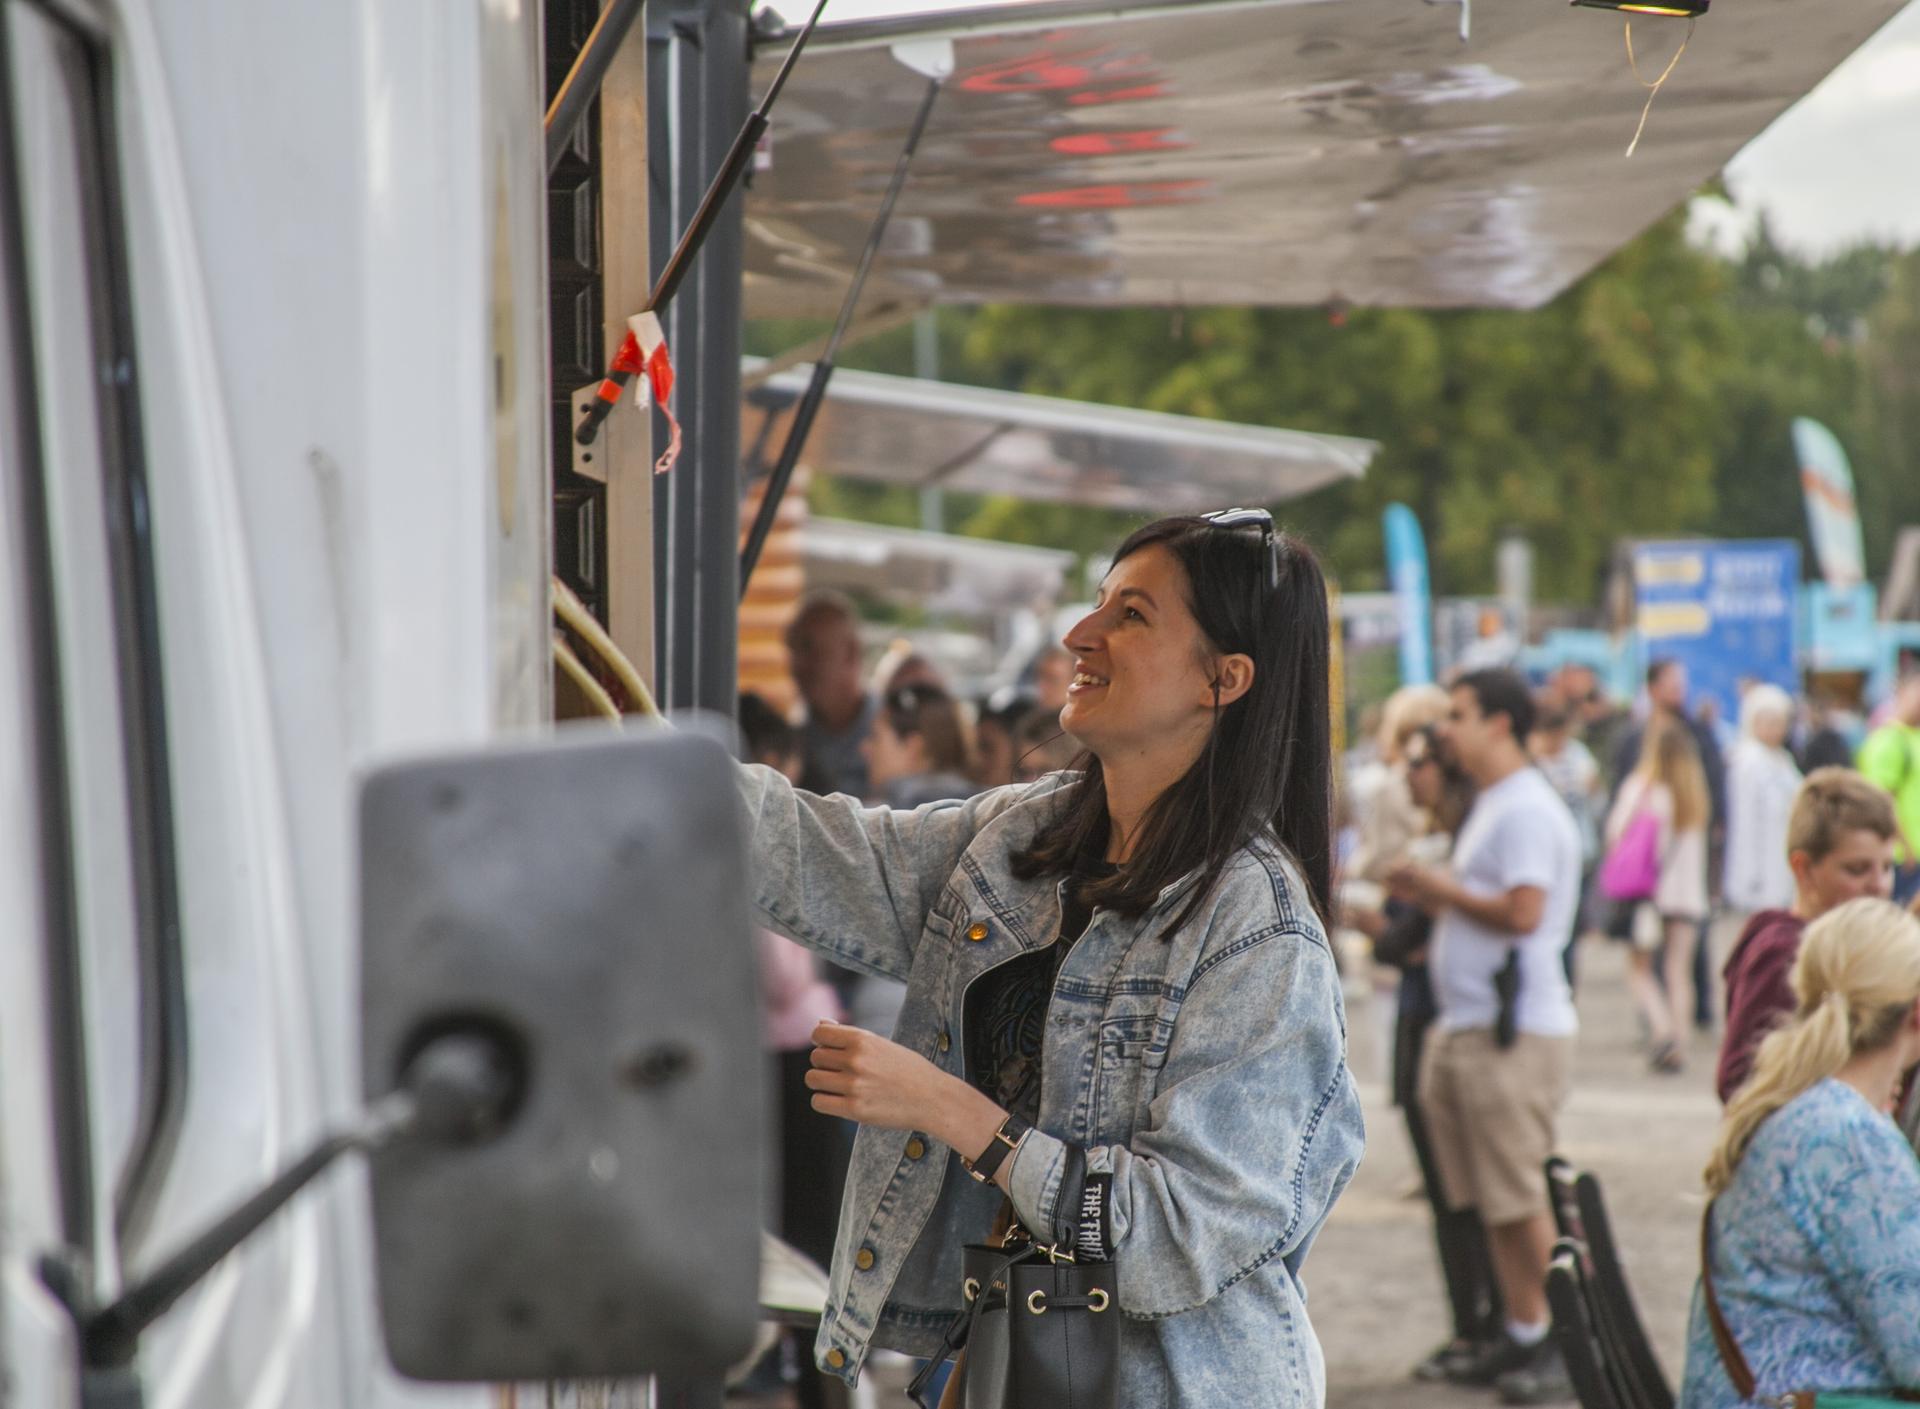 ¡Festival de sabores de camiones de comida en Bydgoszcz!  Disponemos de una lista de expositores